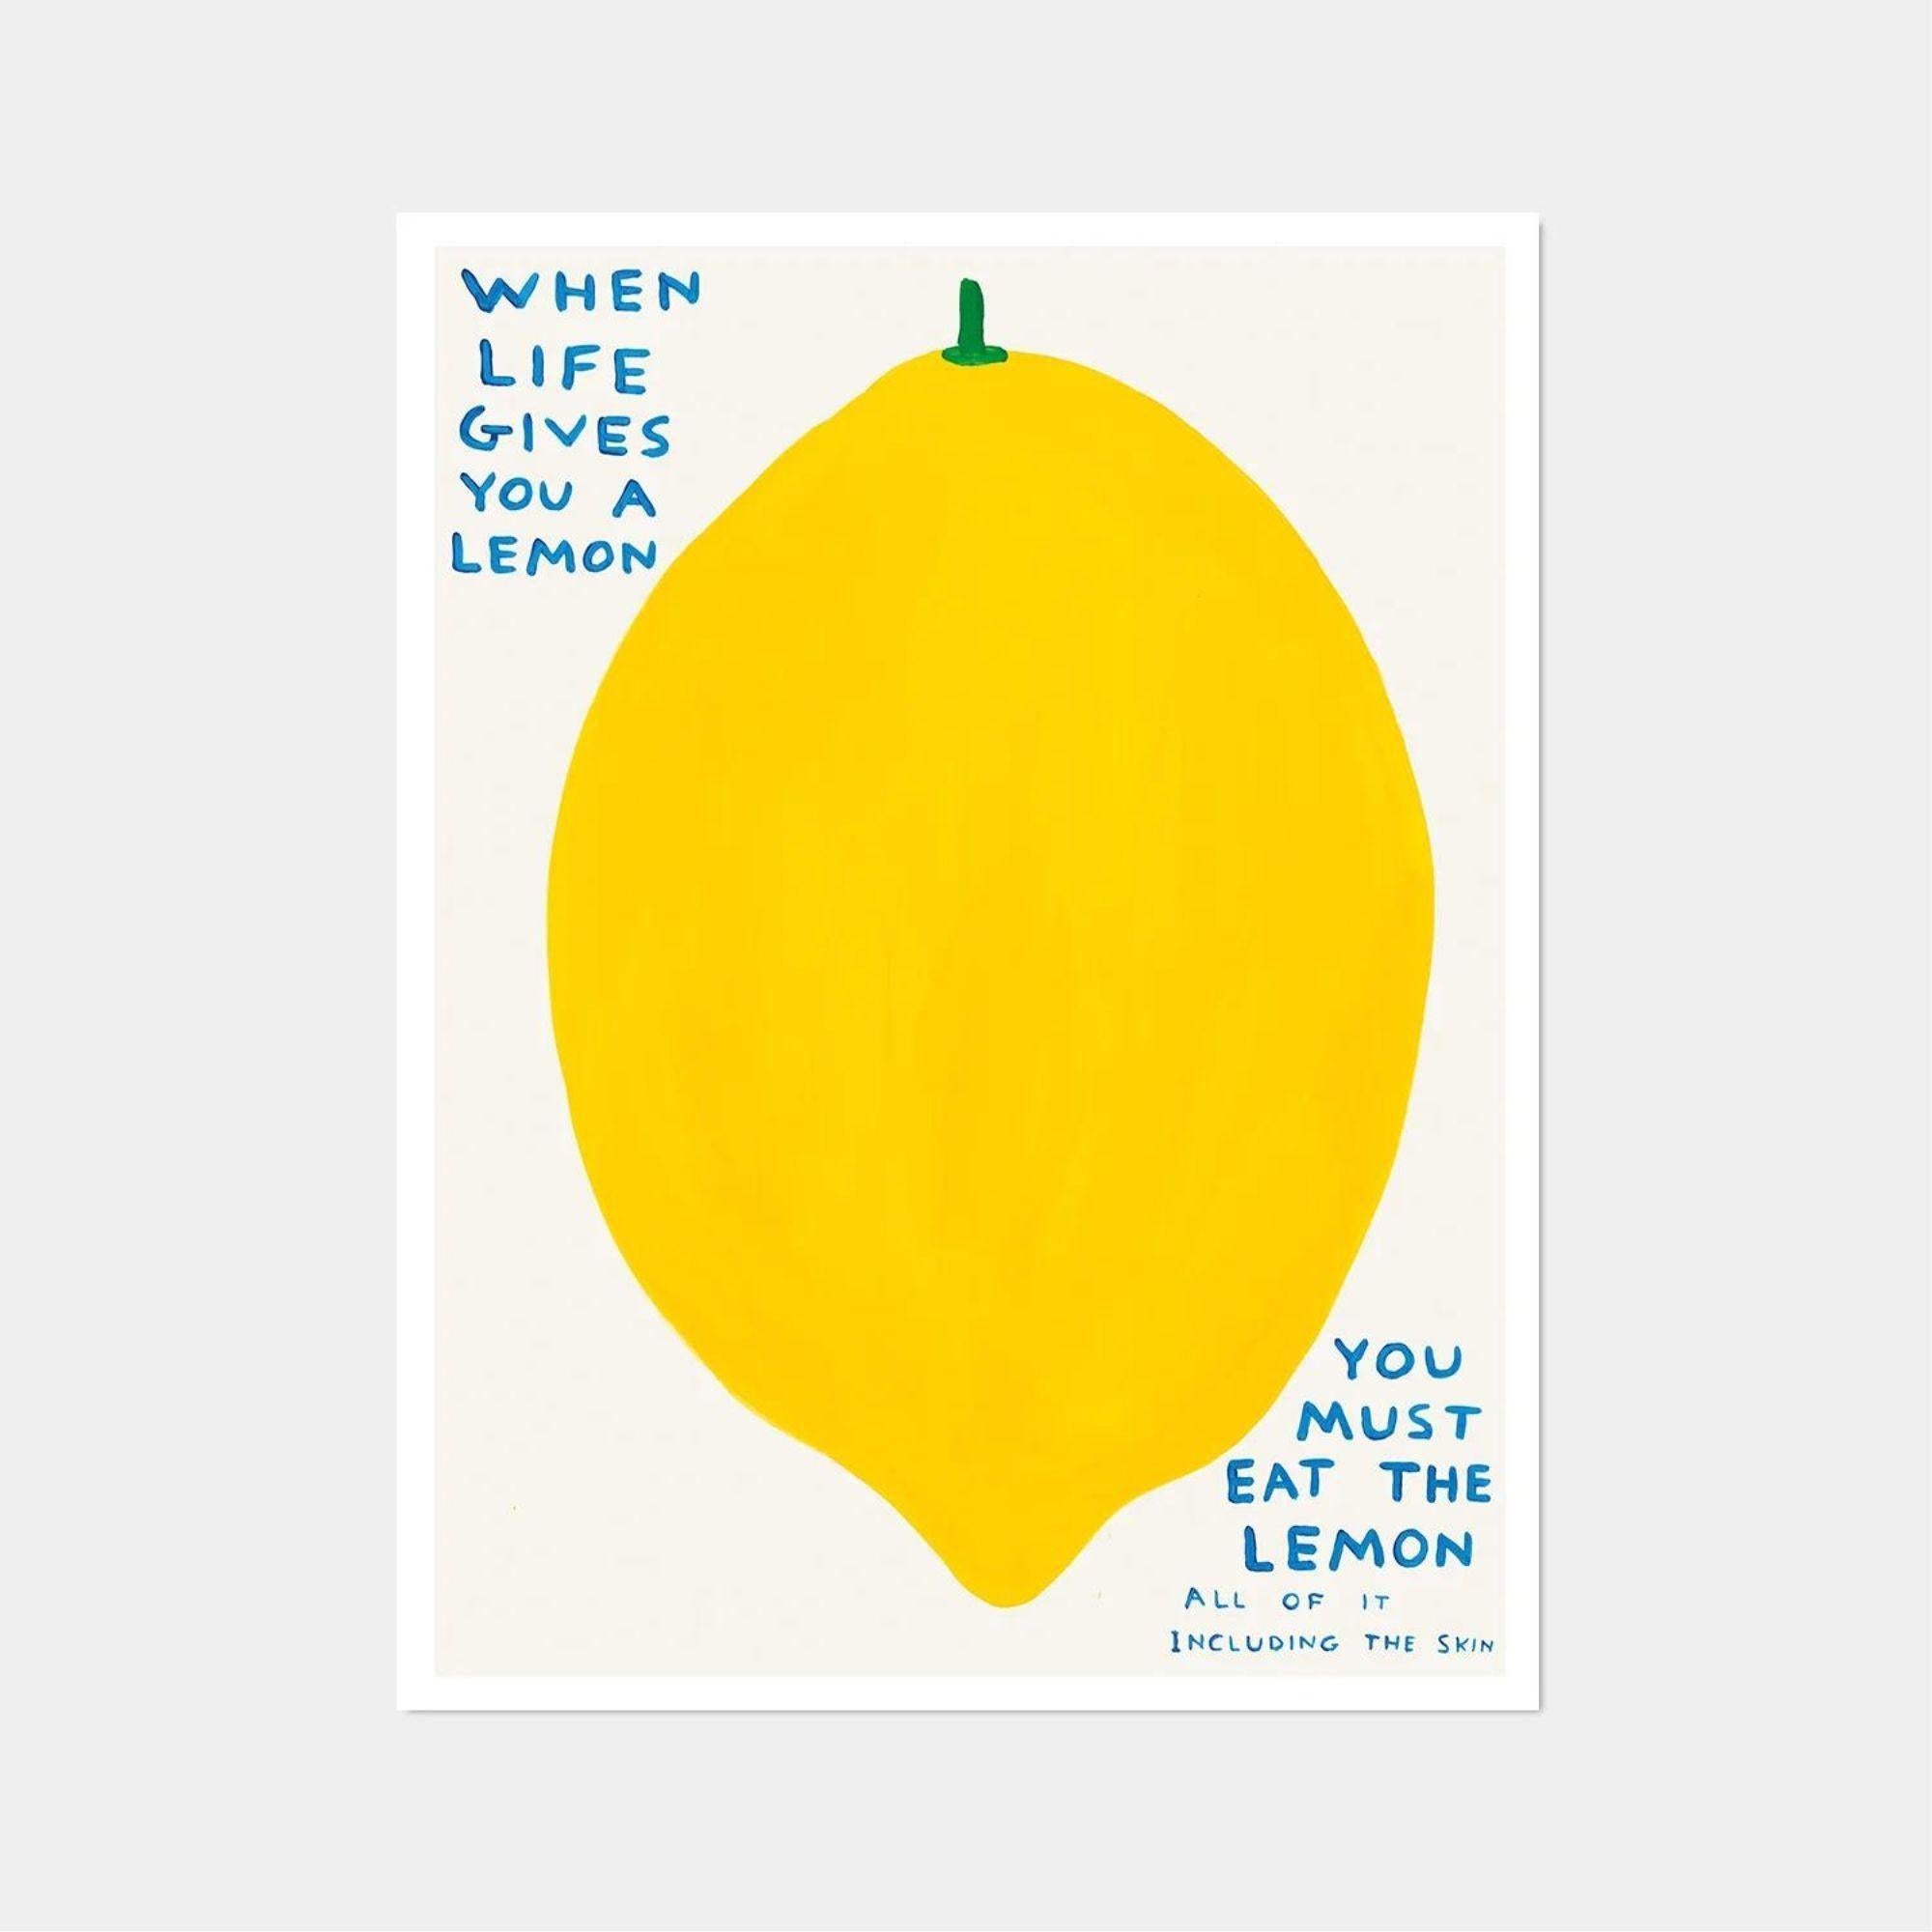 David Shrigley, Wenn das Leben dir eine Zitrone schenkt, 2021

60 x 80 cm

Offset-Lithographie

Gedruckt auf 200g Munken Lynx Papier

Narayana Press in Dänemark